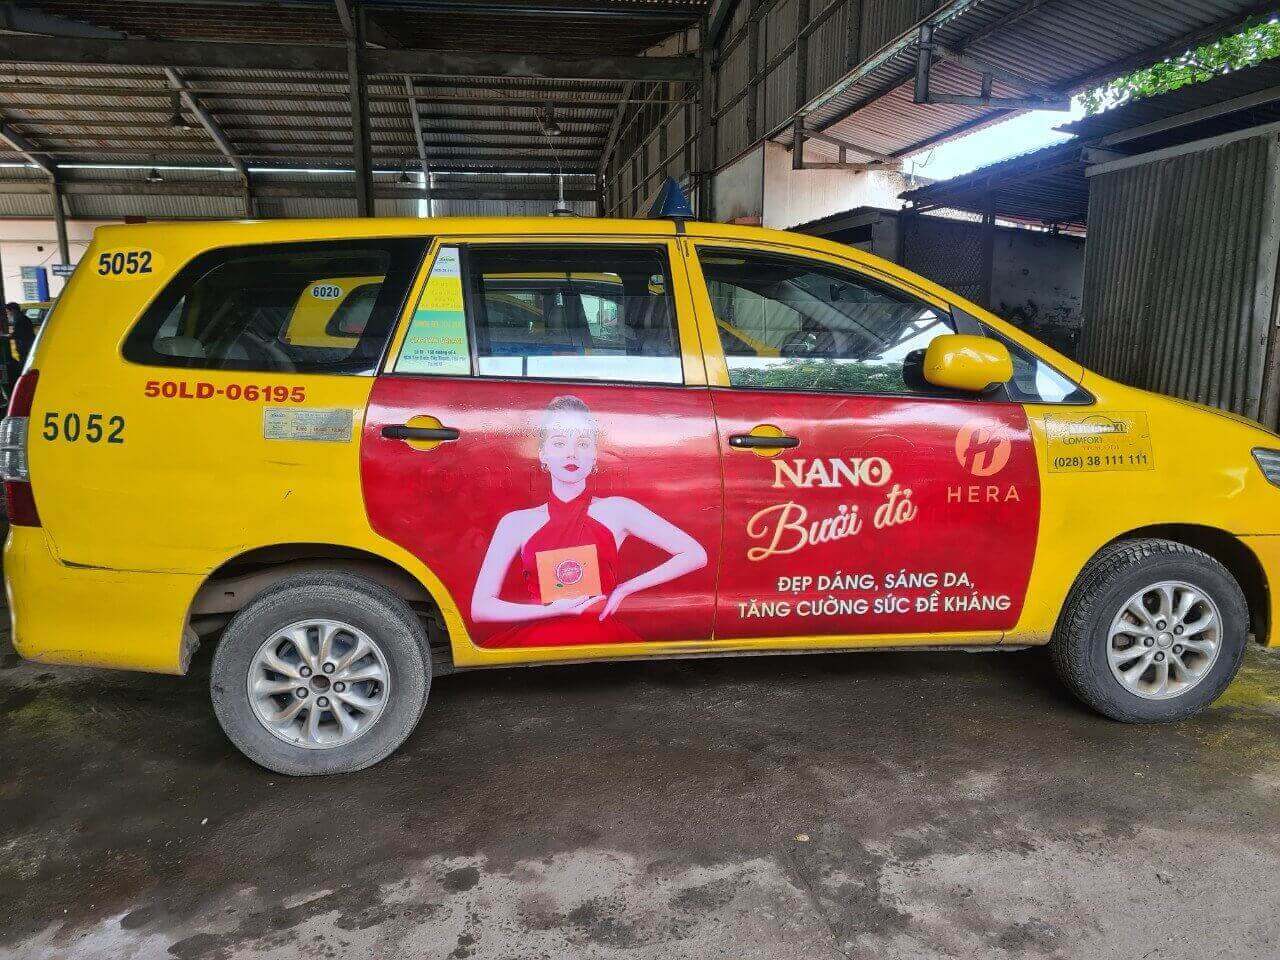 Hera nano bưởi đỏ quảng cáo dán full 4 cánh Vina taxi vàng